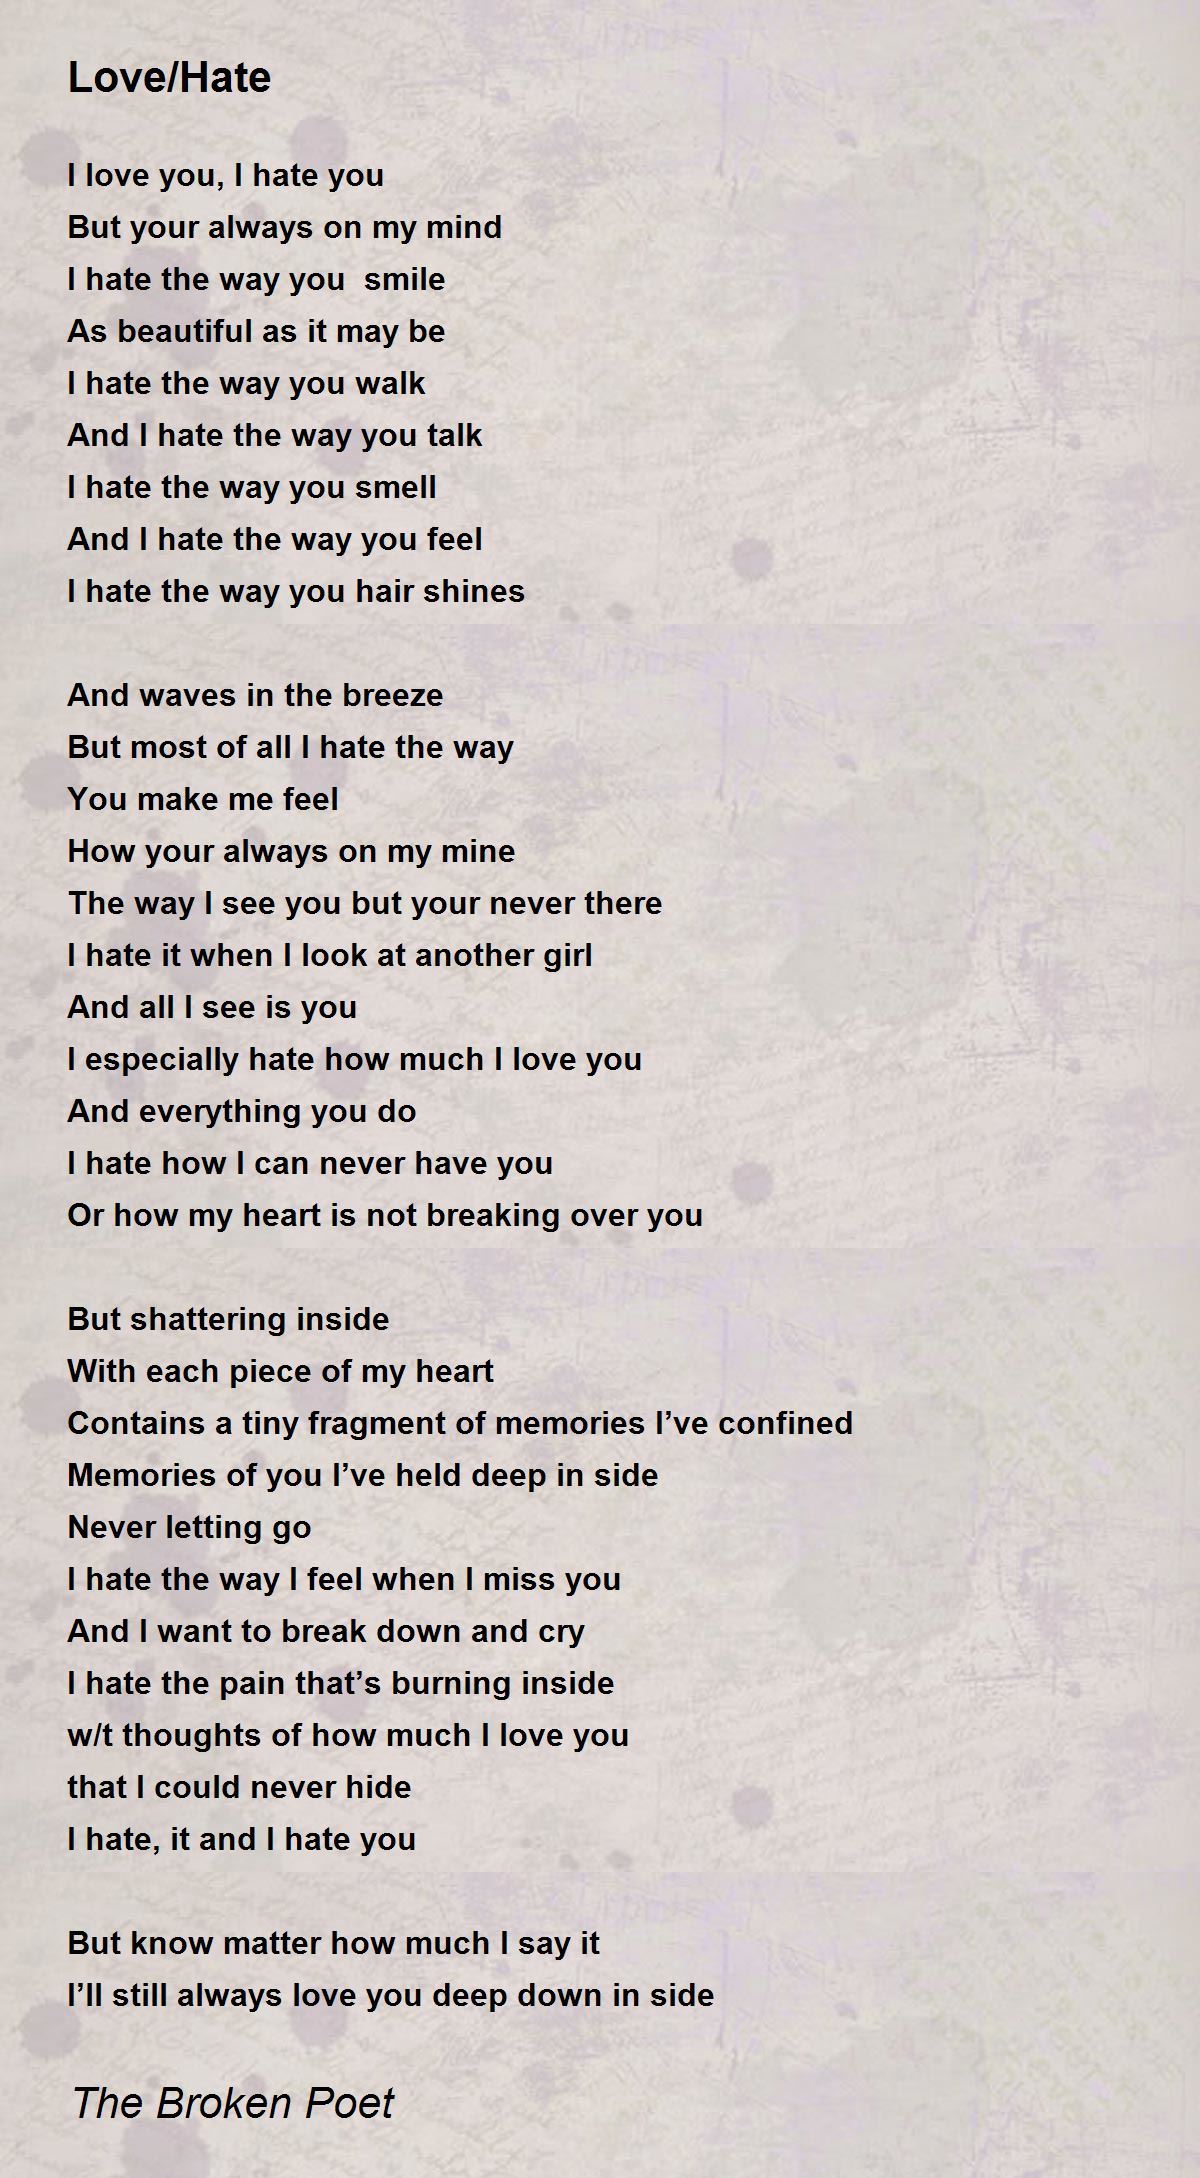 Love/Hate - Love/Hate Poem by The Broken Poet